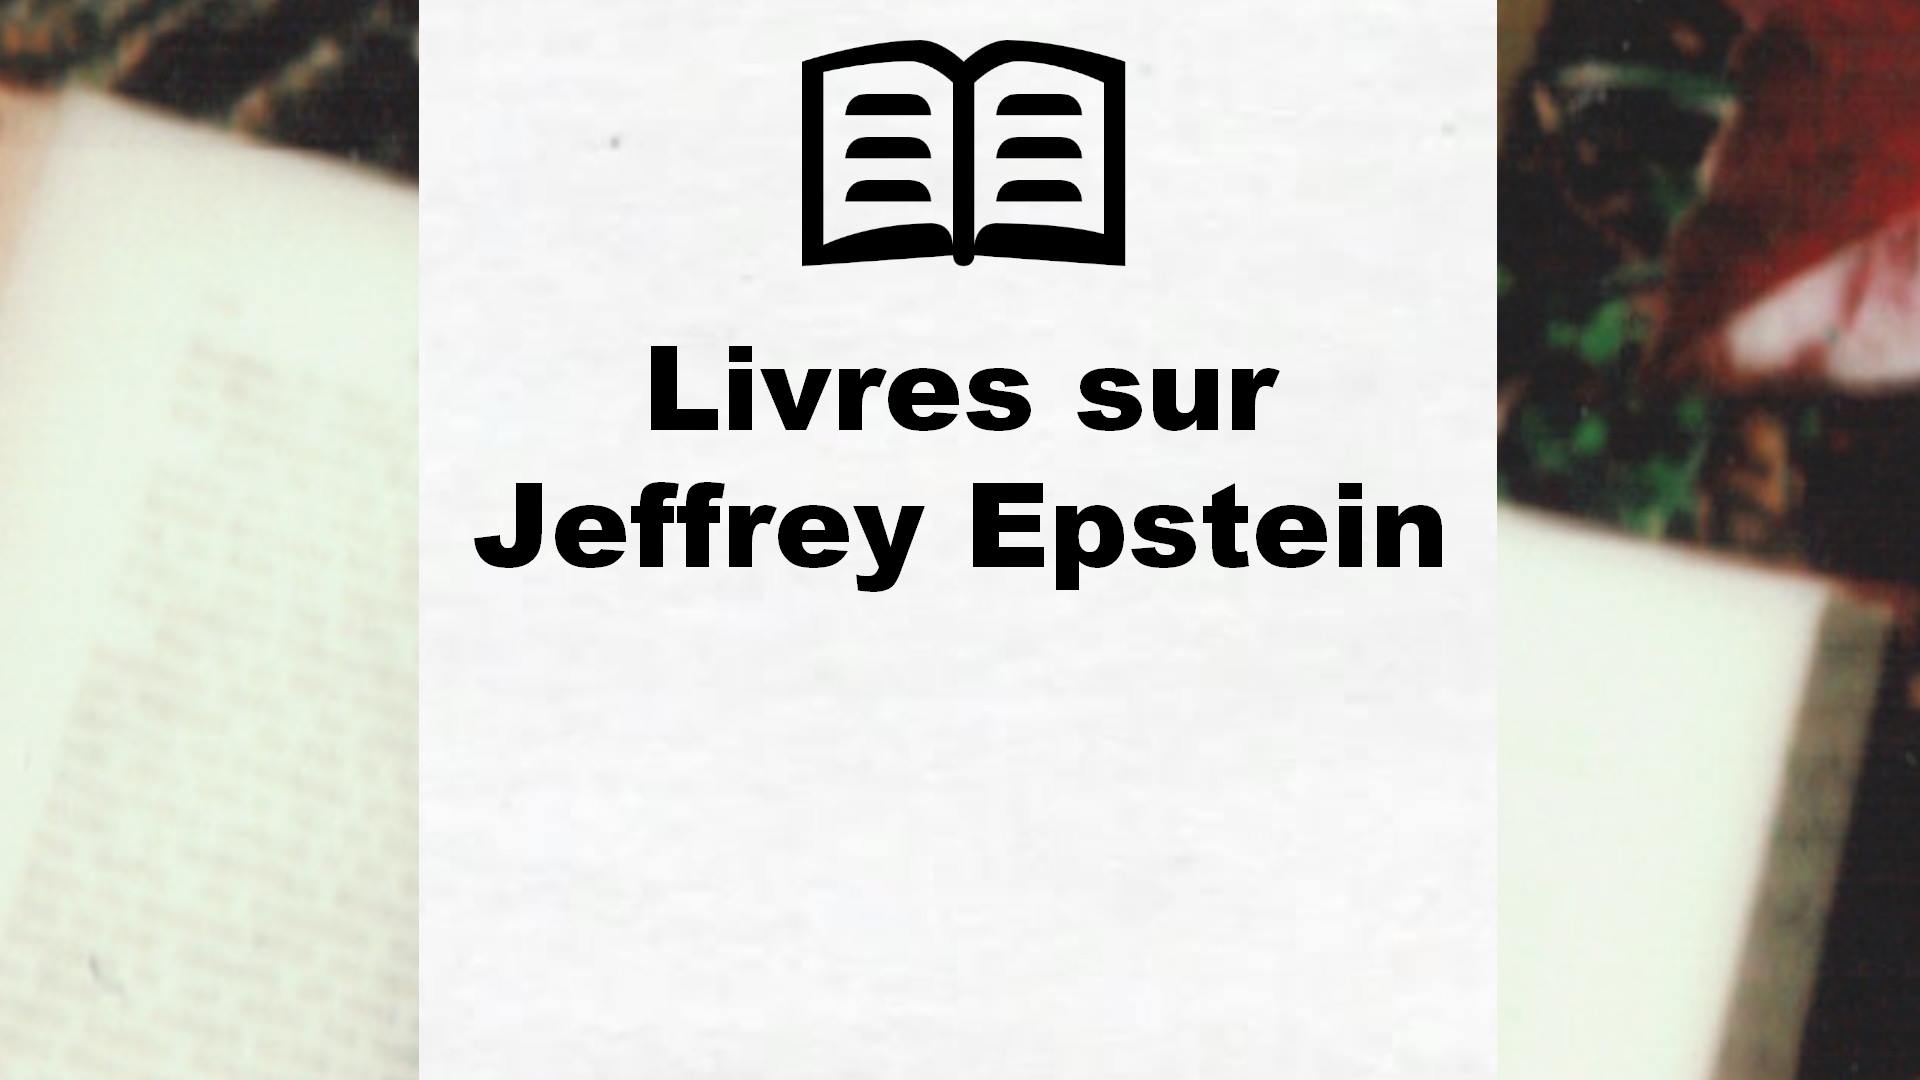 Livres sur Jeffrey Epstein